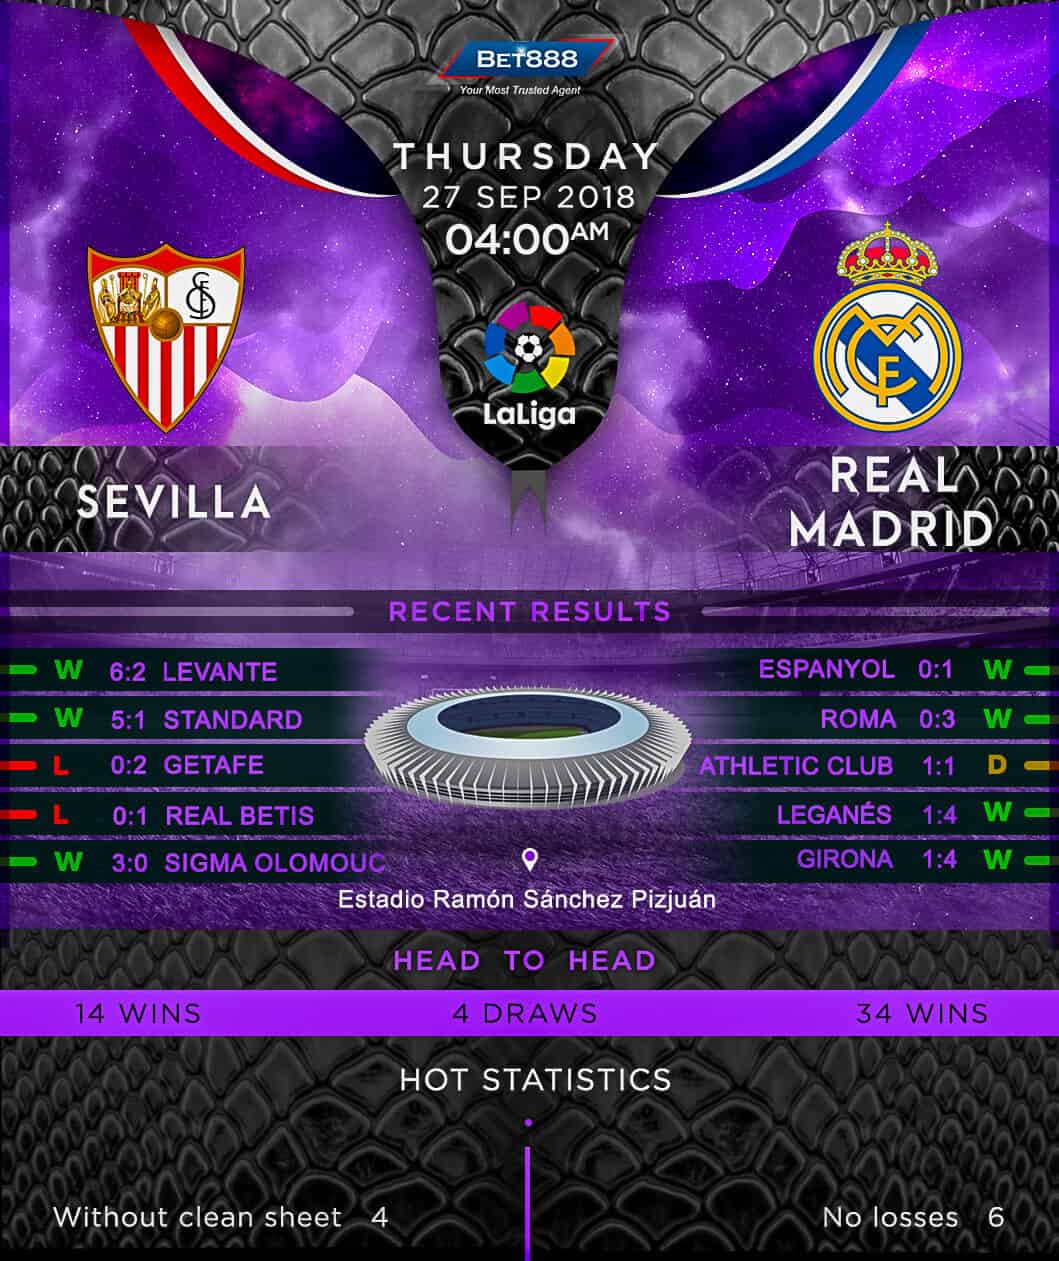 Sevilla vs Real Madrid 27/09/18